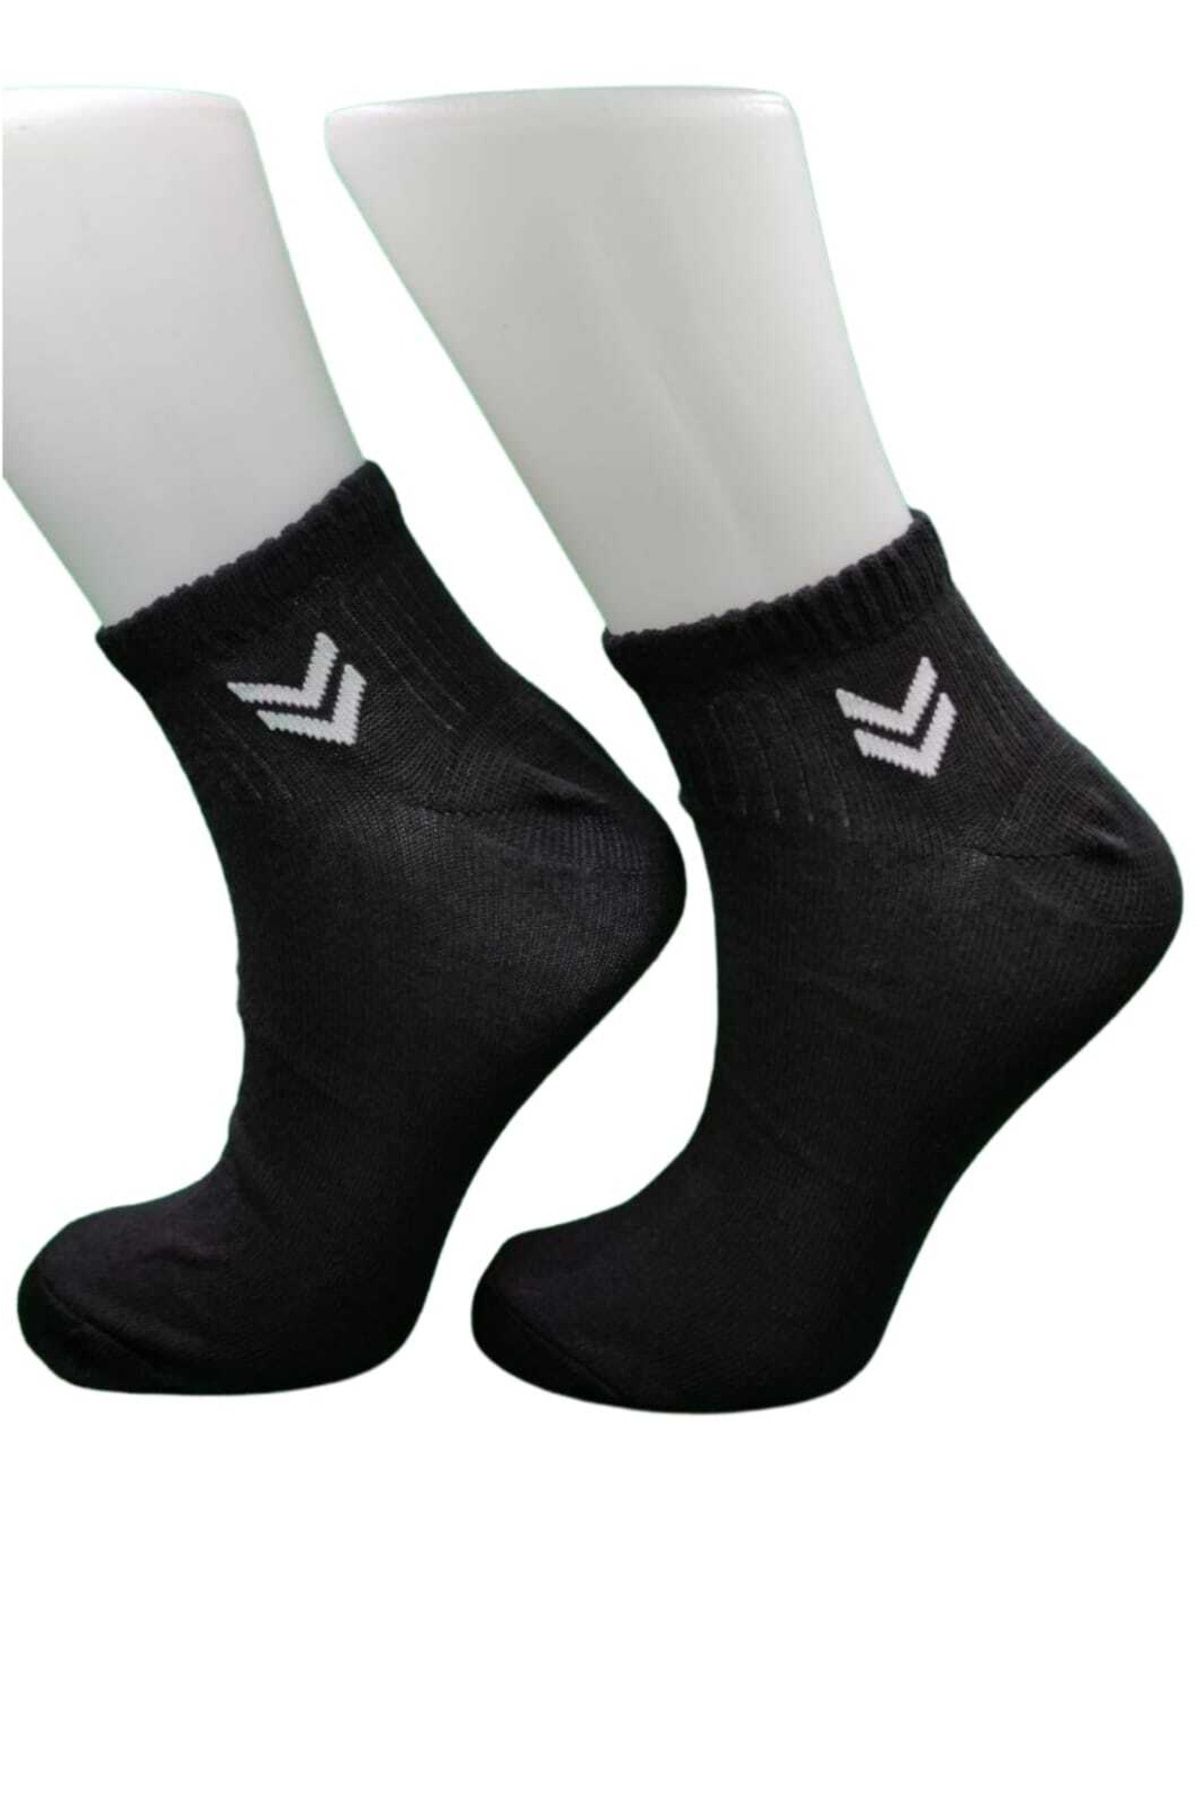 pazariz Siyah Patik Çorap 6lı